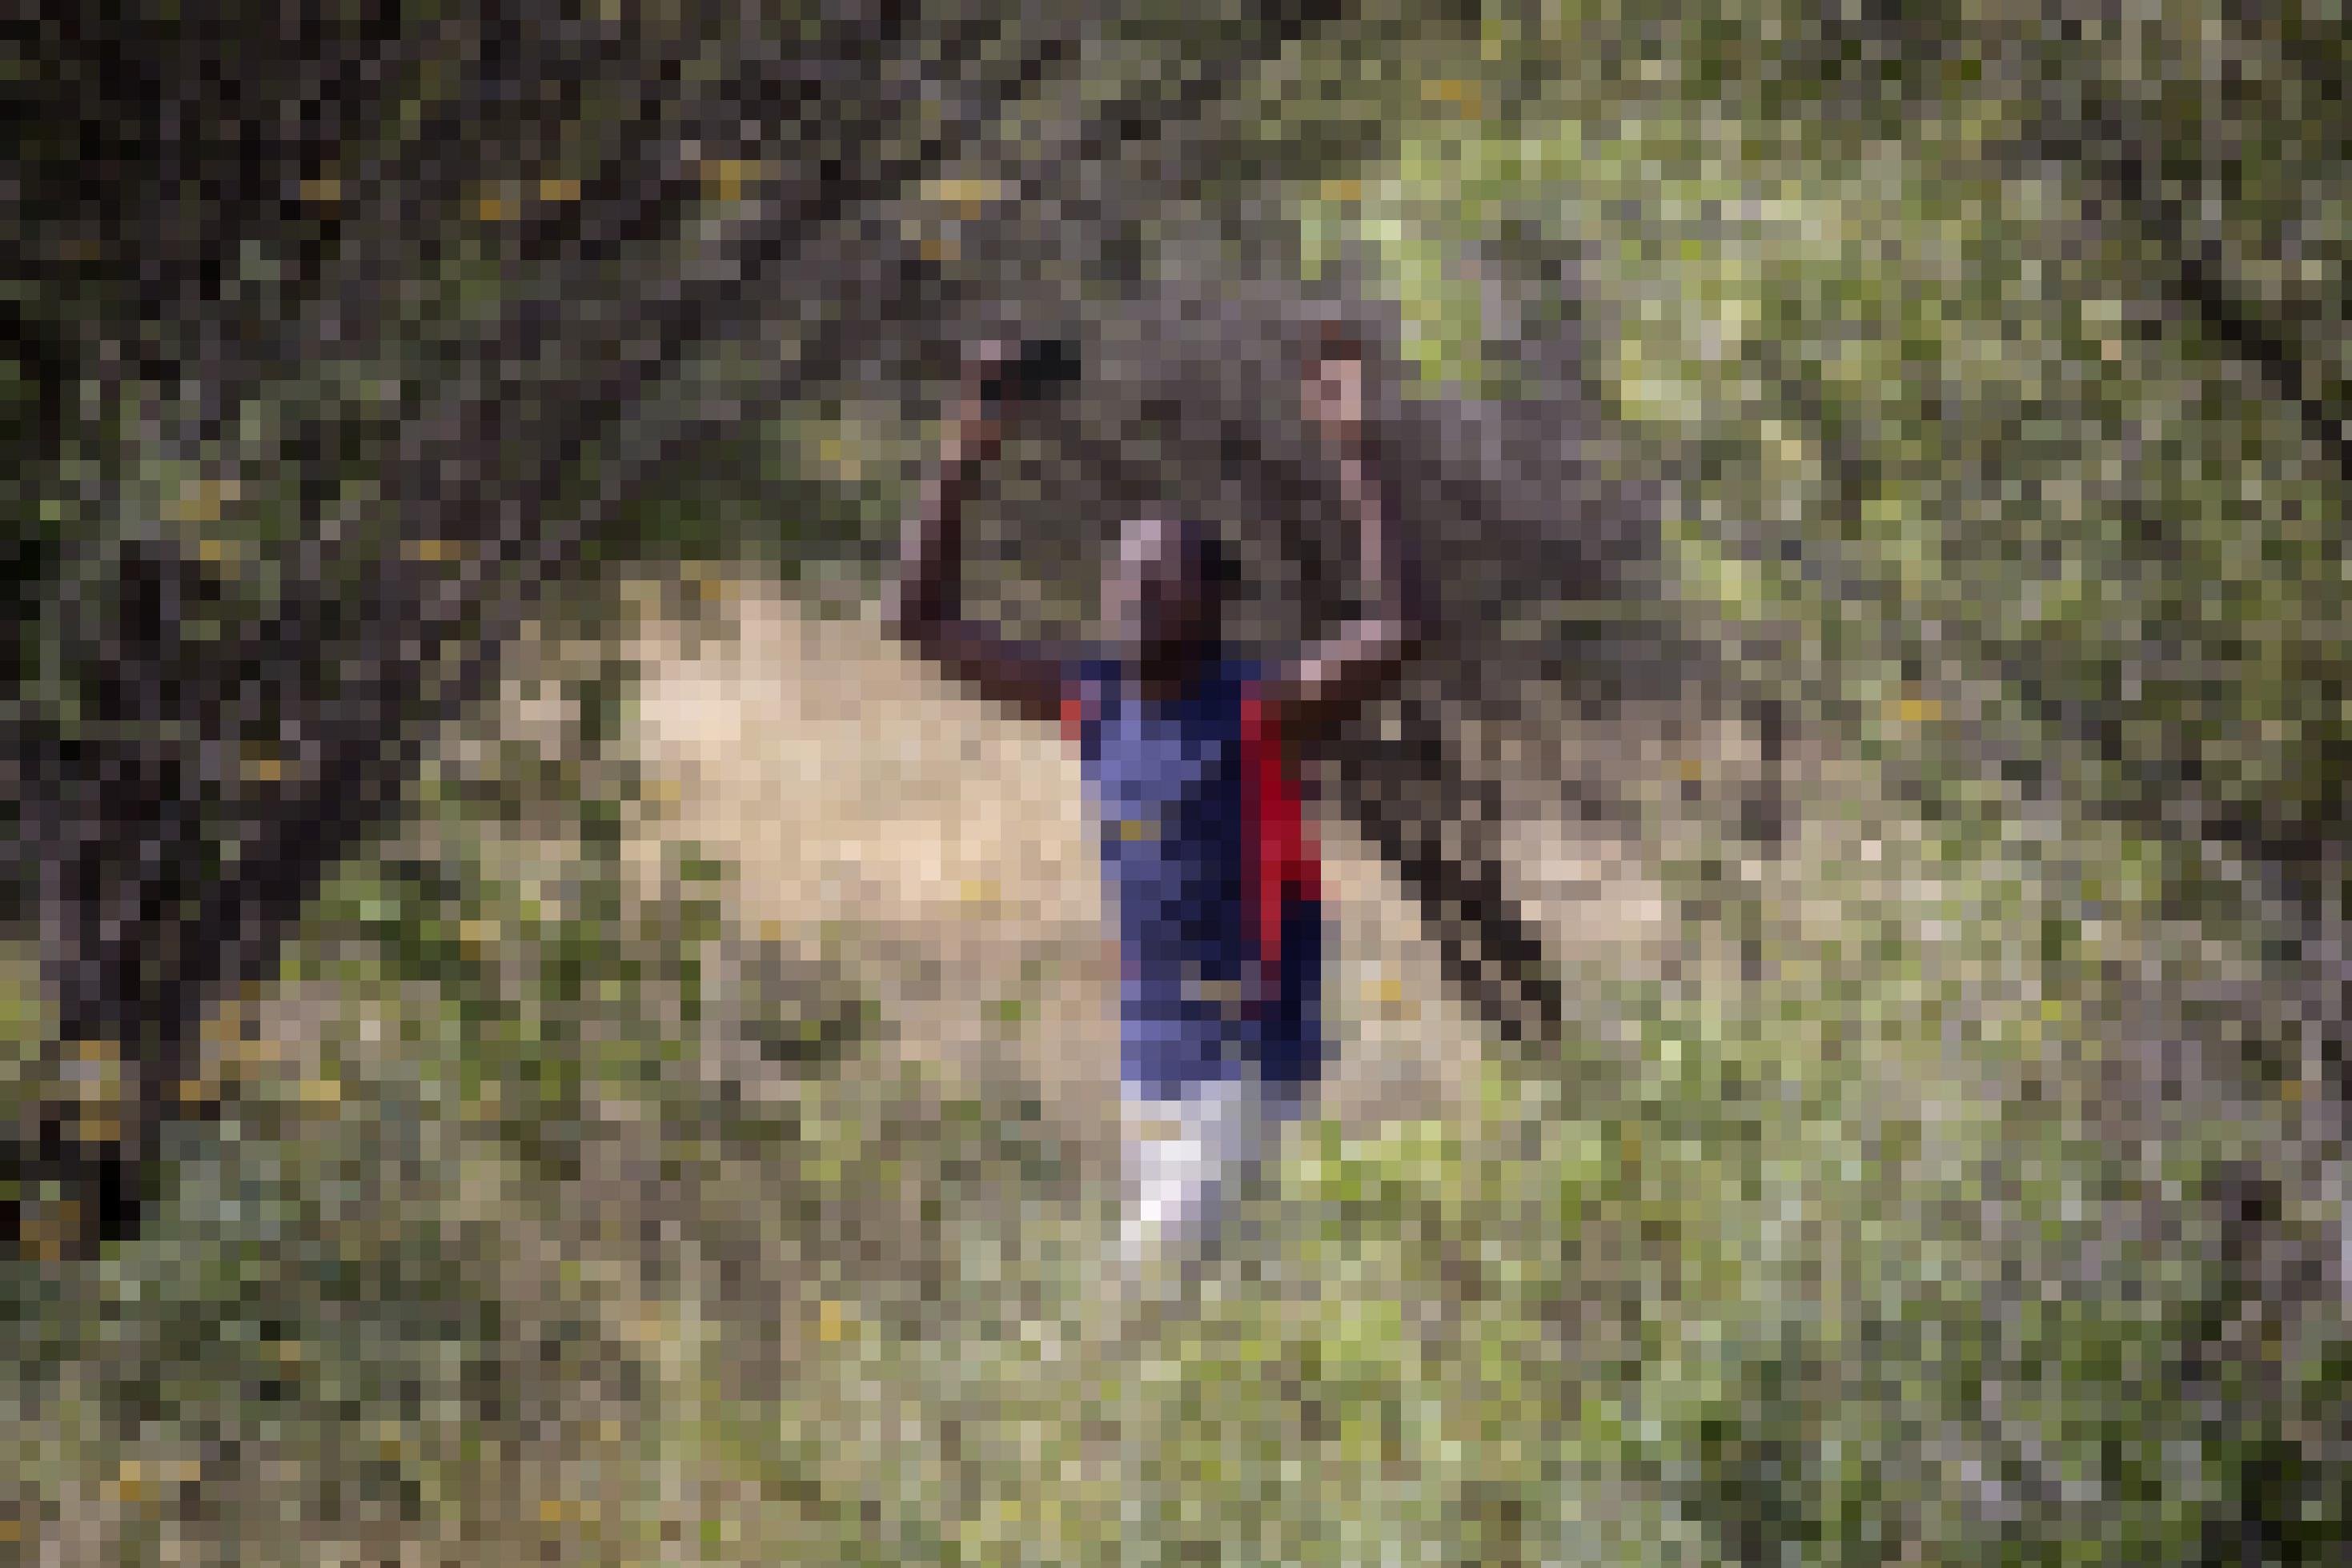 Ein Mann geht im Norden von Kenia durch einen Schwarm von Wüstenheuschrecken. Die Insekten sind so dicht, dass die Luft dunkel wirkt.